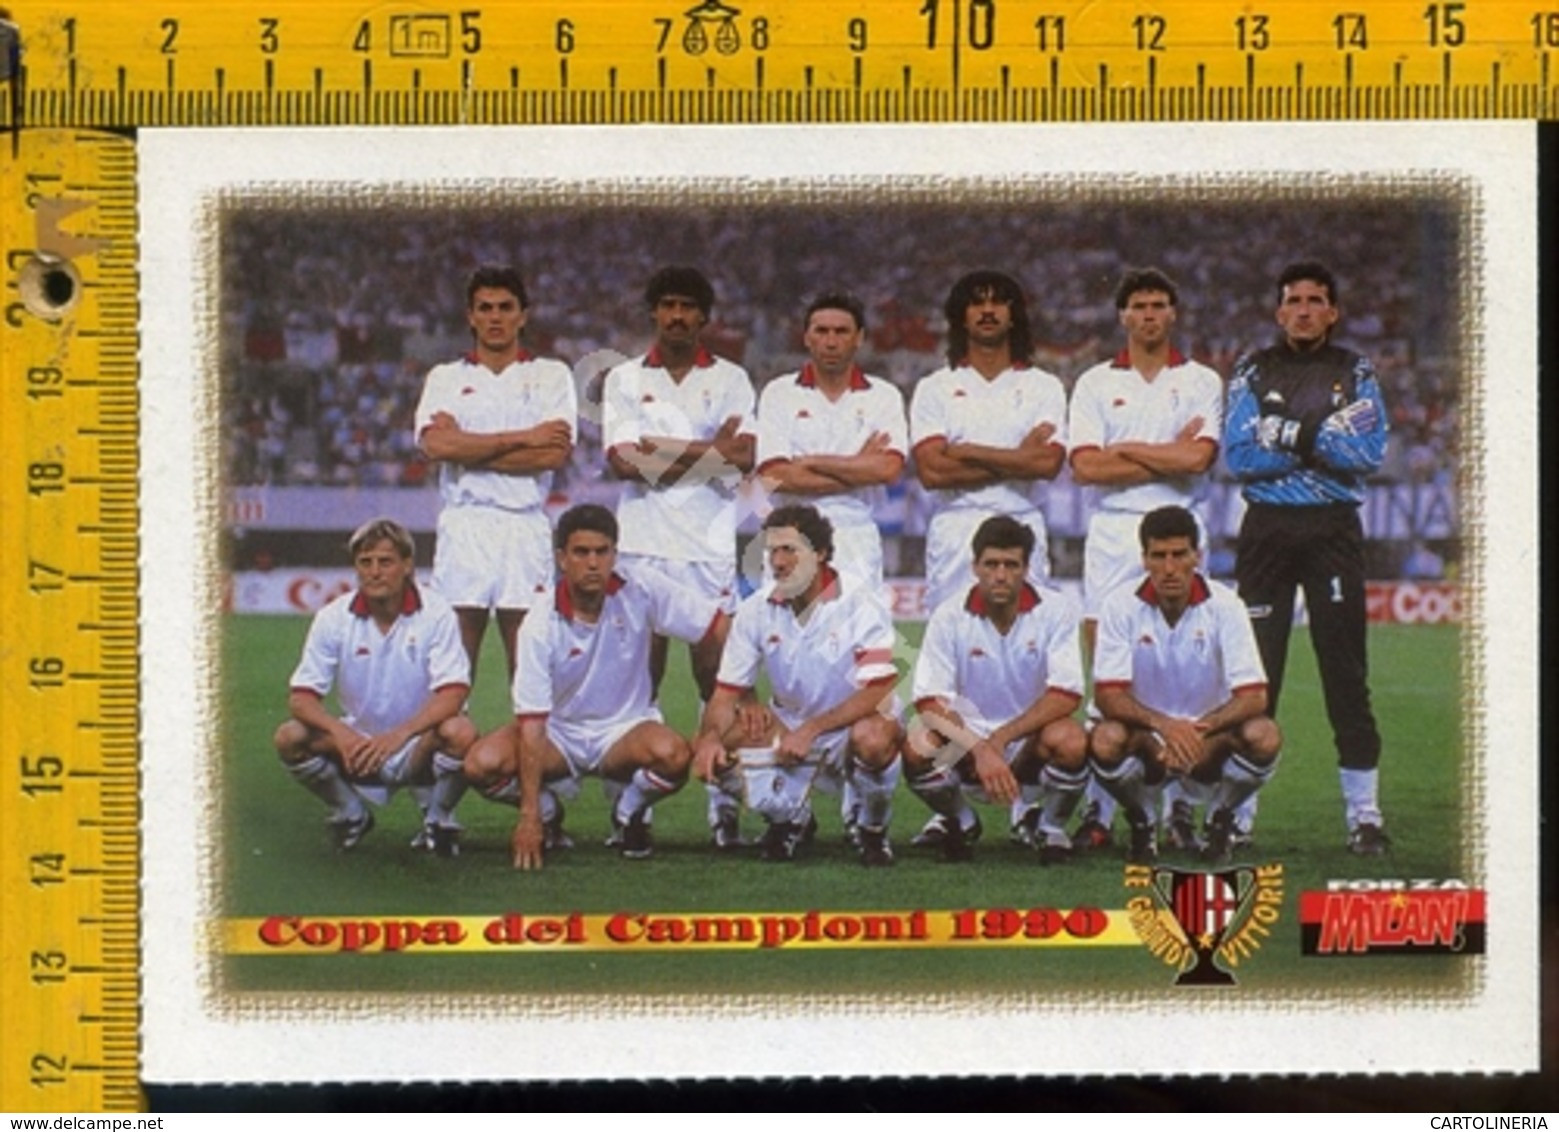 Calcio Milan Coppa Dei Campioni 1990 - Football